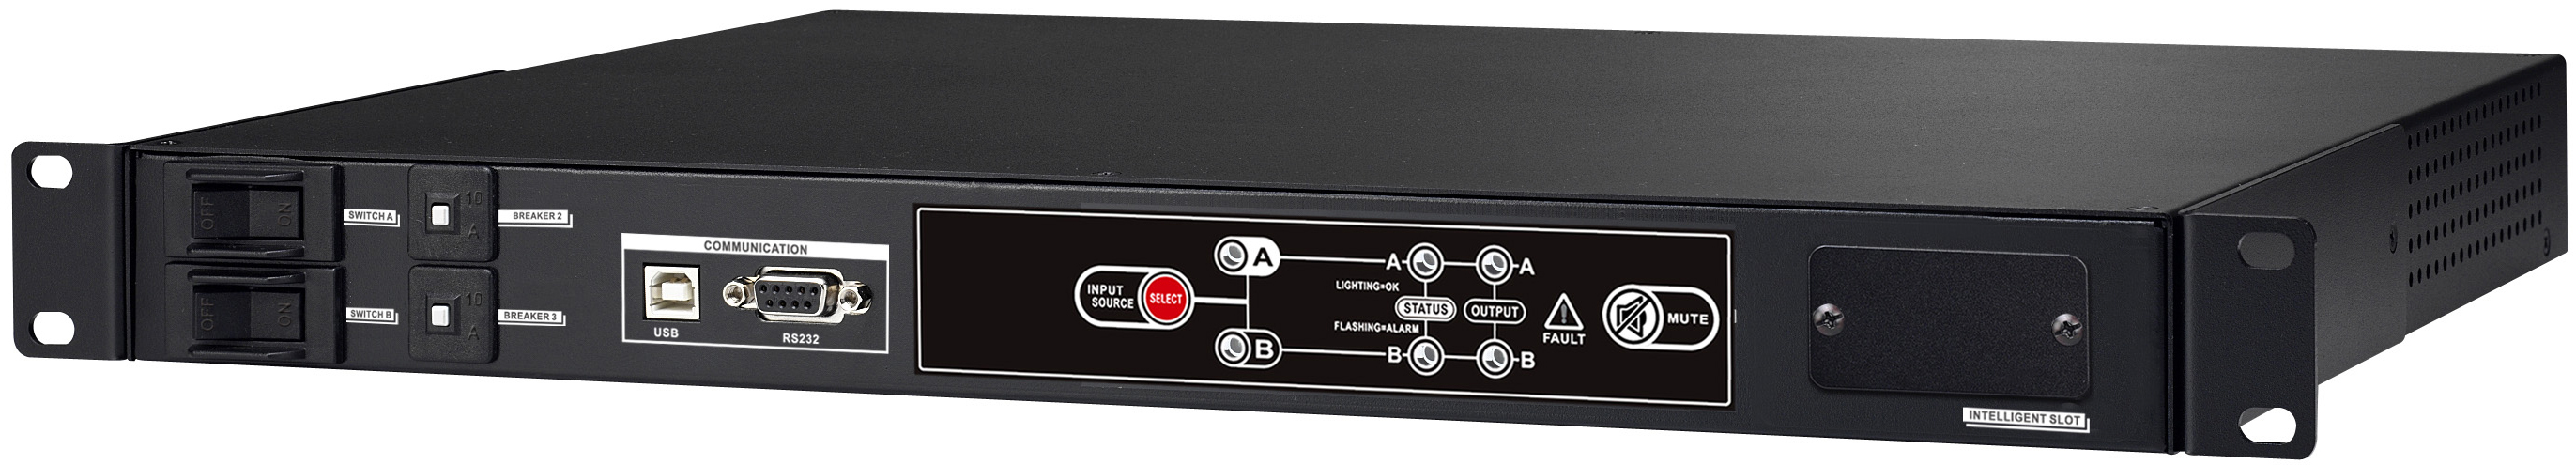 BlueWalker PowerWalker ATS - Redundant switch (Rack - einbaufähig) - Wechselstrom 220/230/240 V - RS-232, USB - Ausgangsanschlüsse: 9 - 1U - 48.3 cm (19")